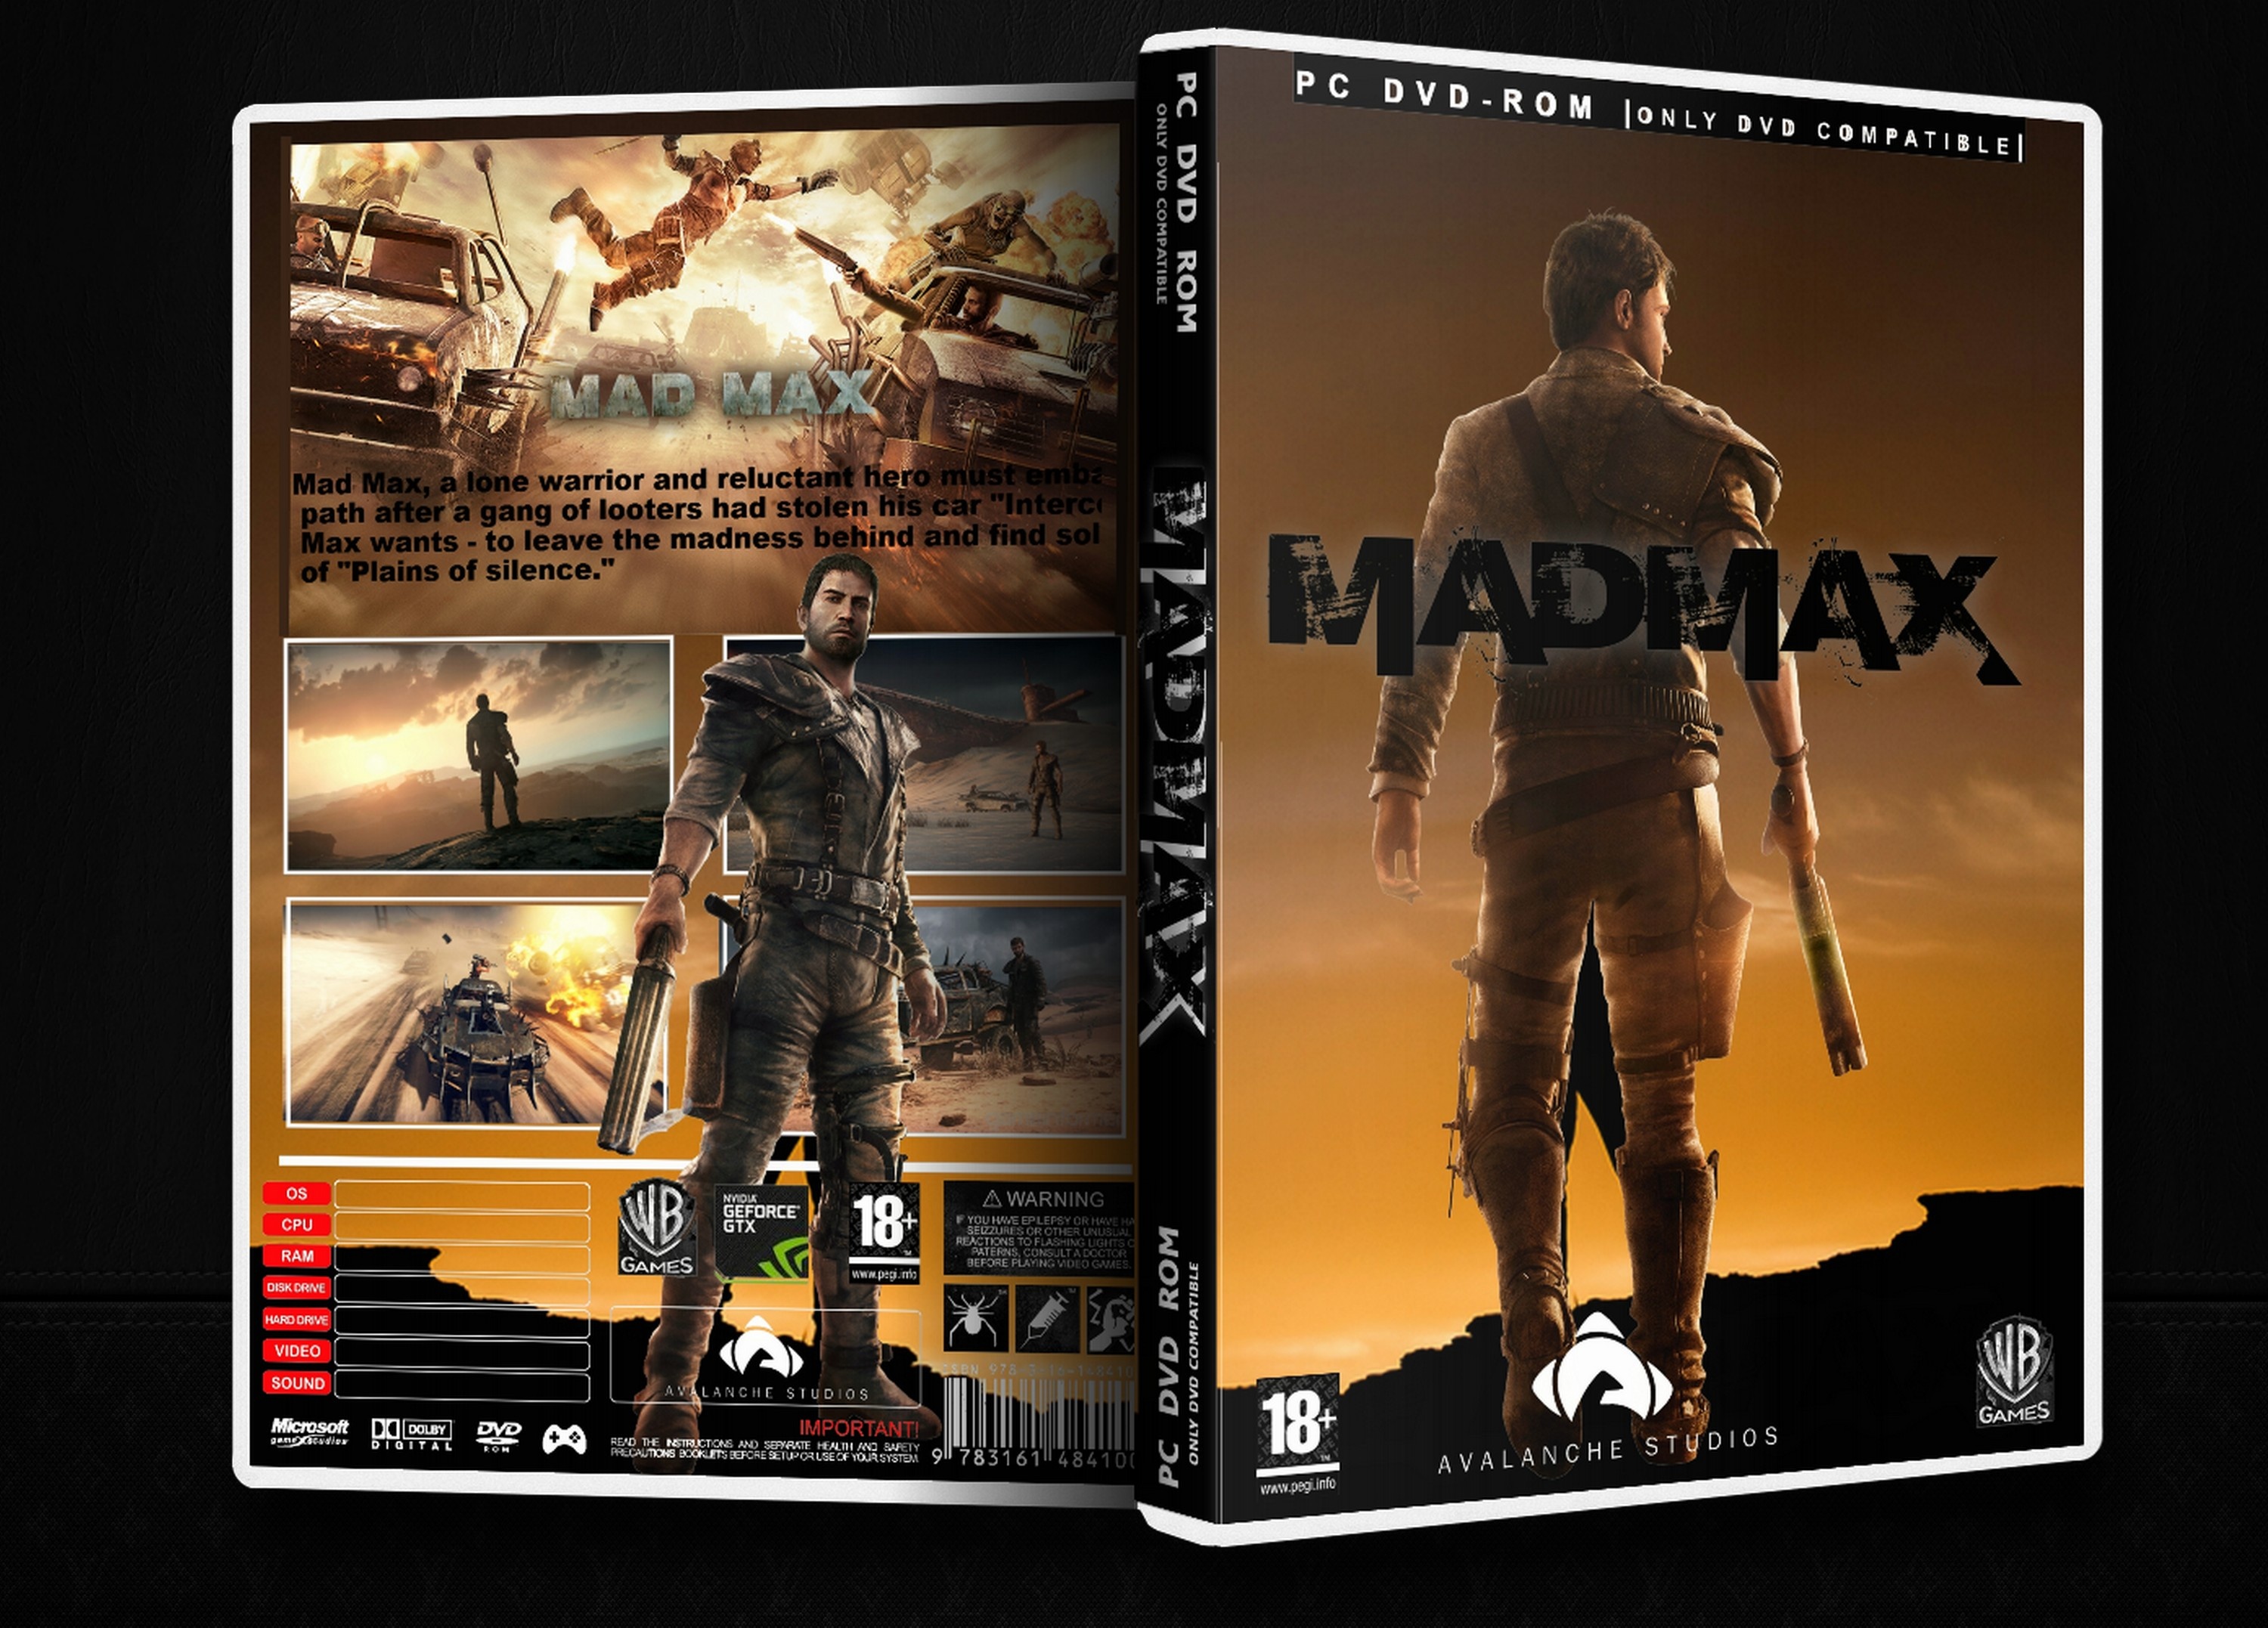 Mad Max box cover